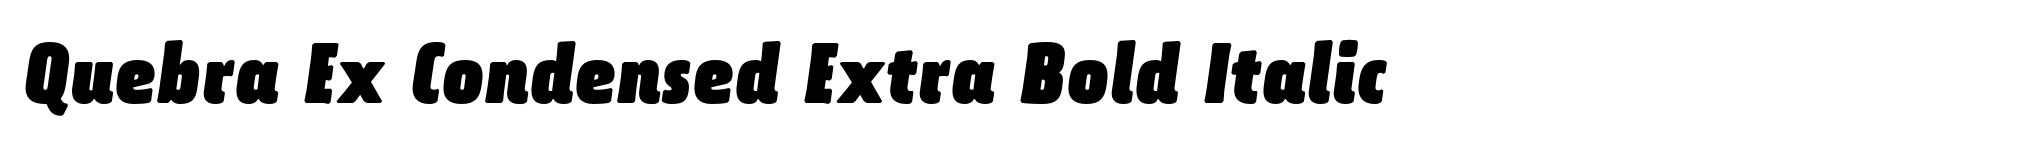 Quebra Ex Condensed Extra Bold Italic image